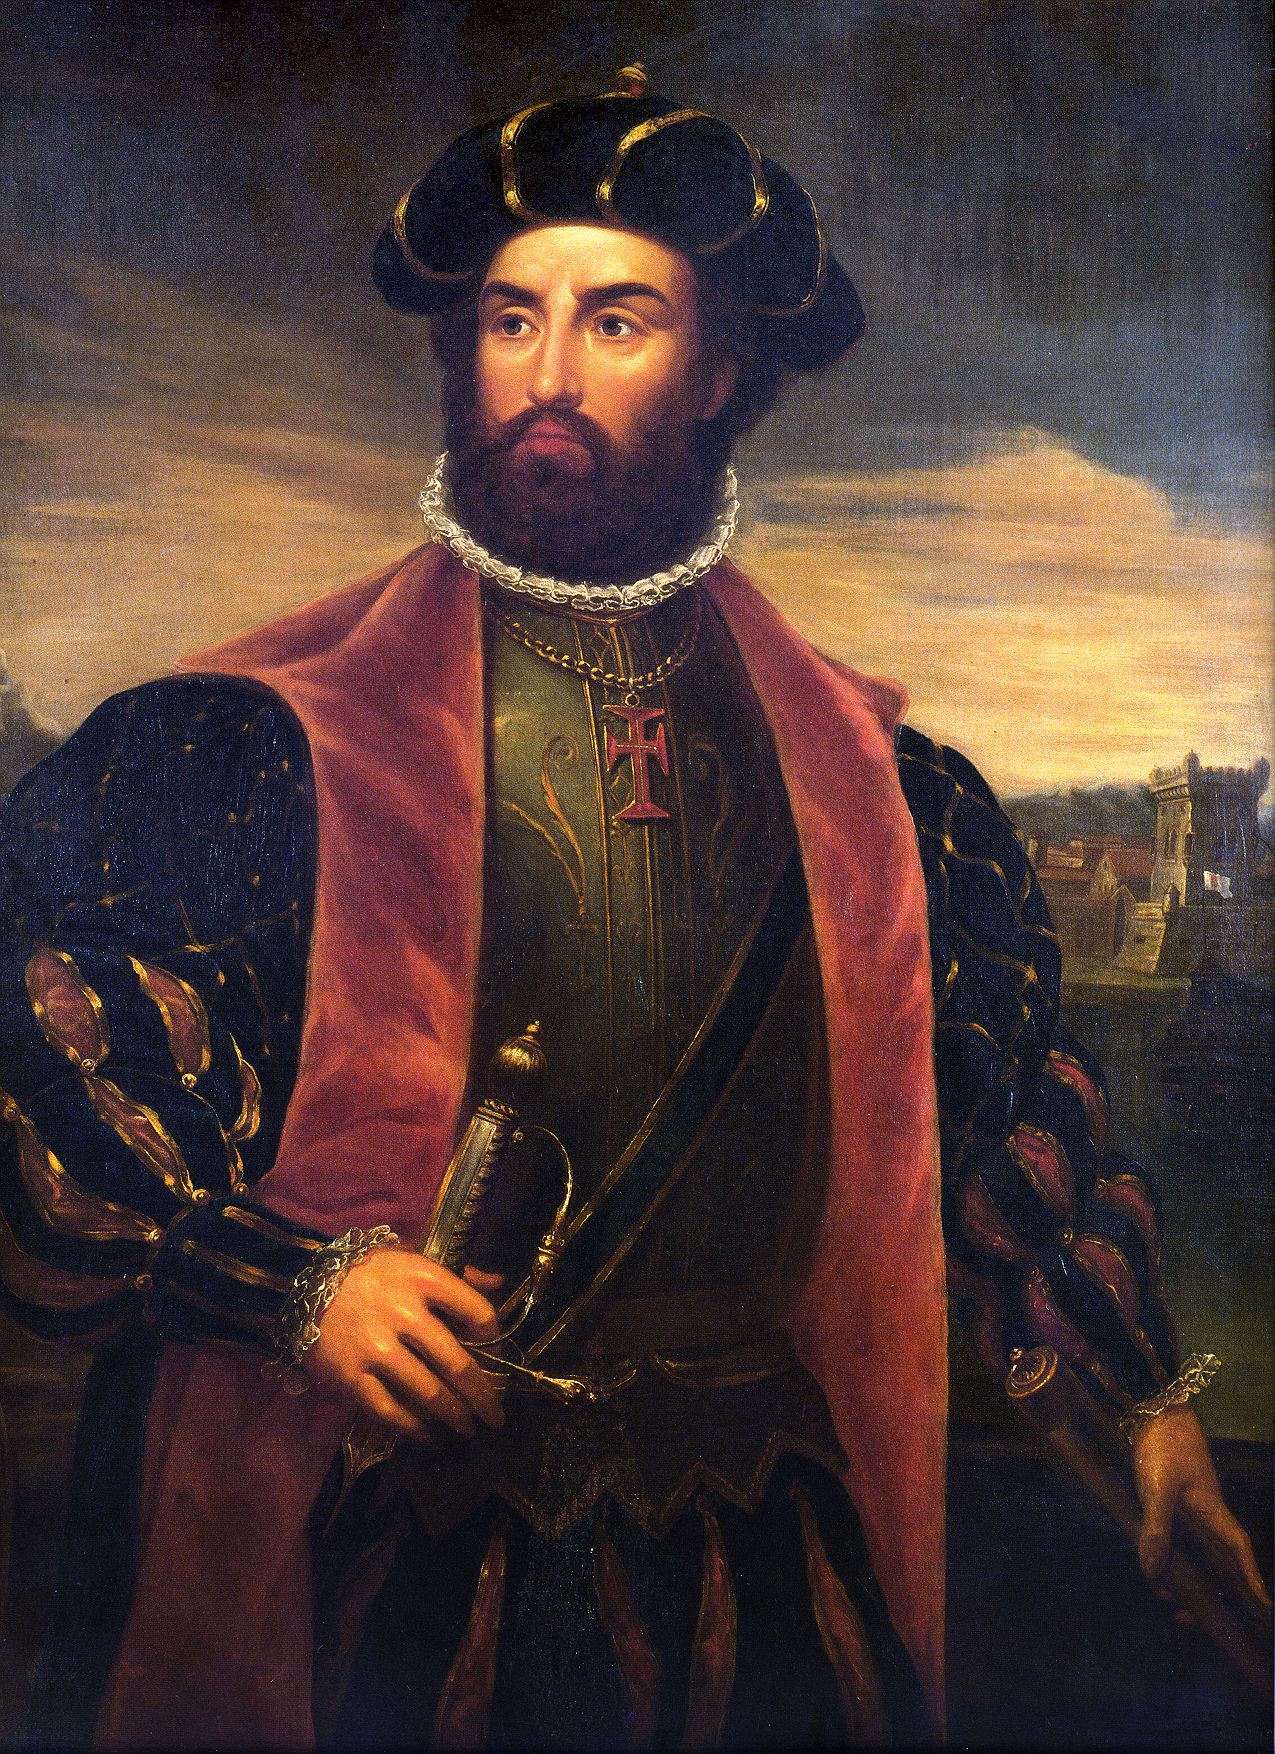 Qual foi o maior feito do Vasco da Gama?